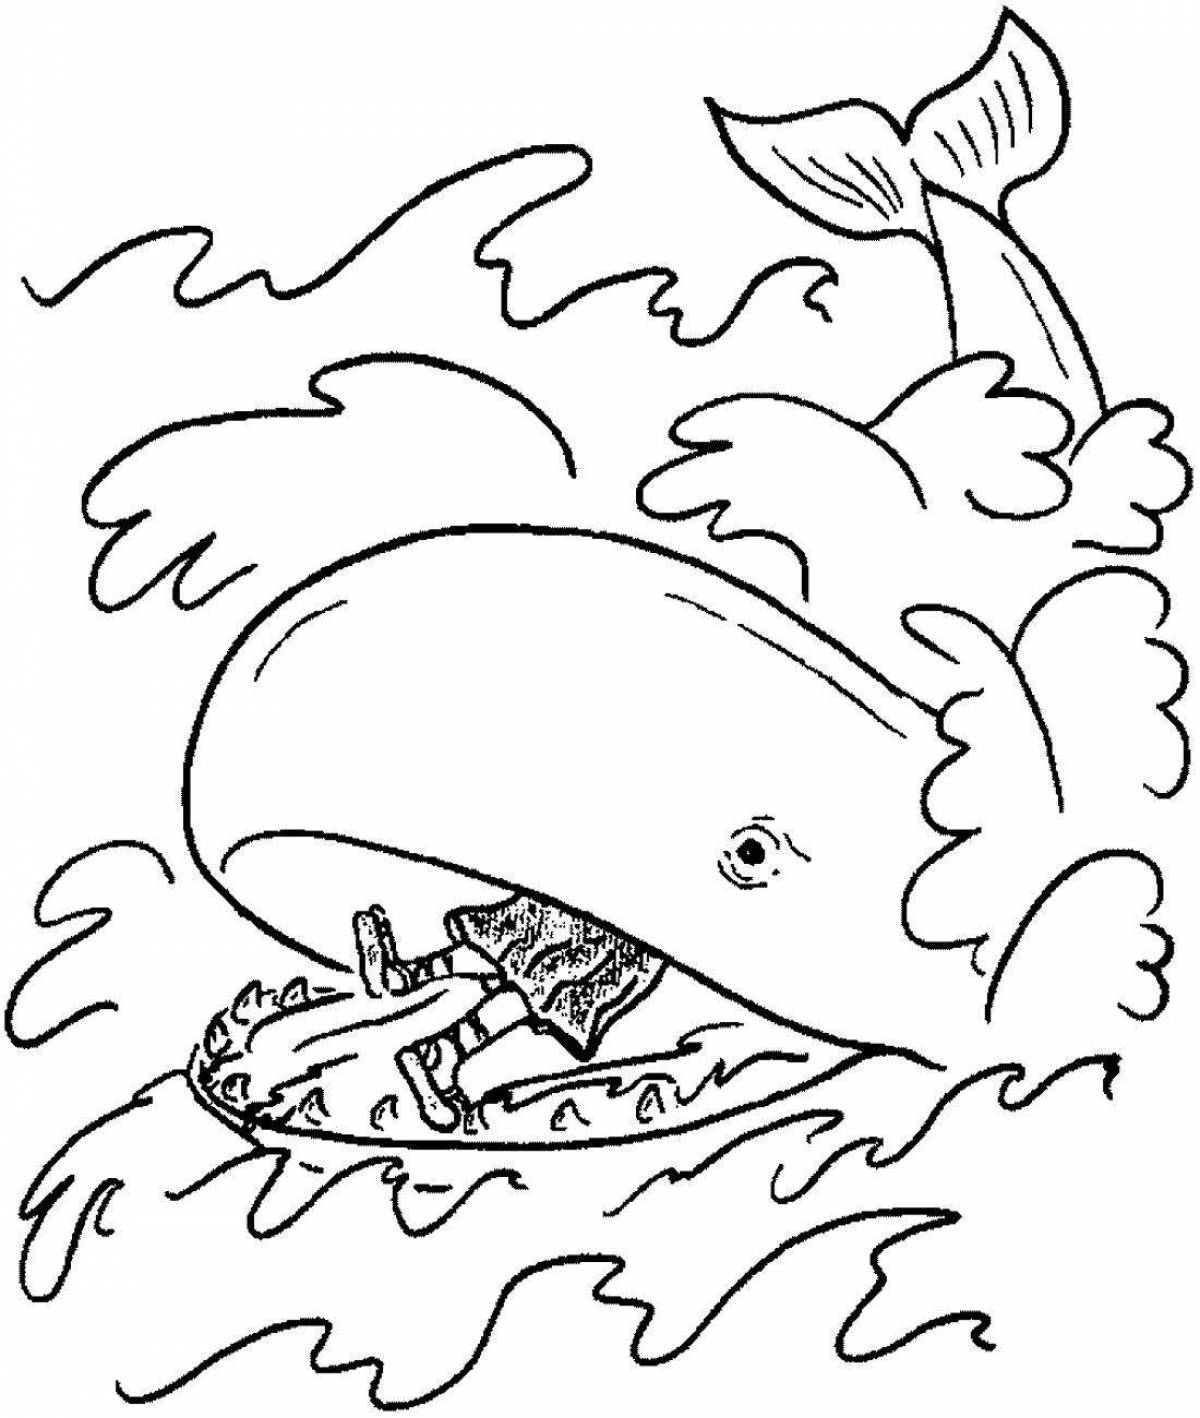 Serendipitous раскраска рыба-кит